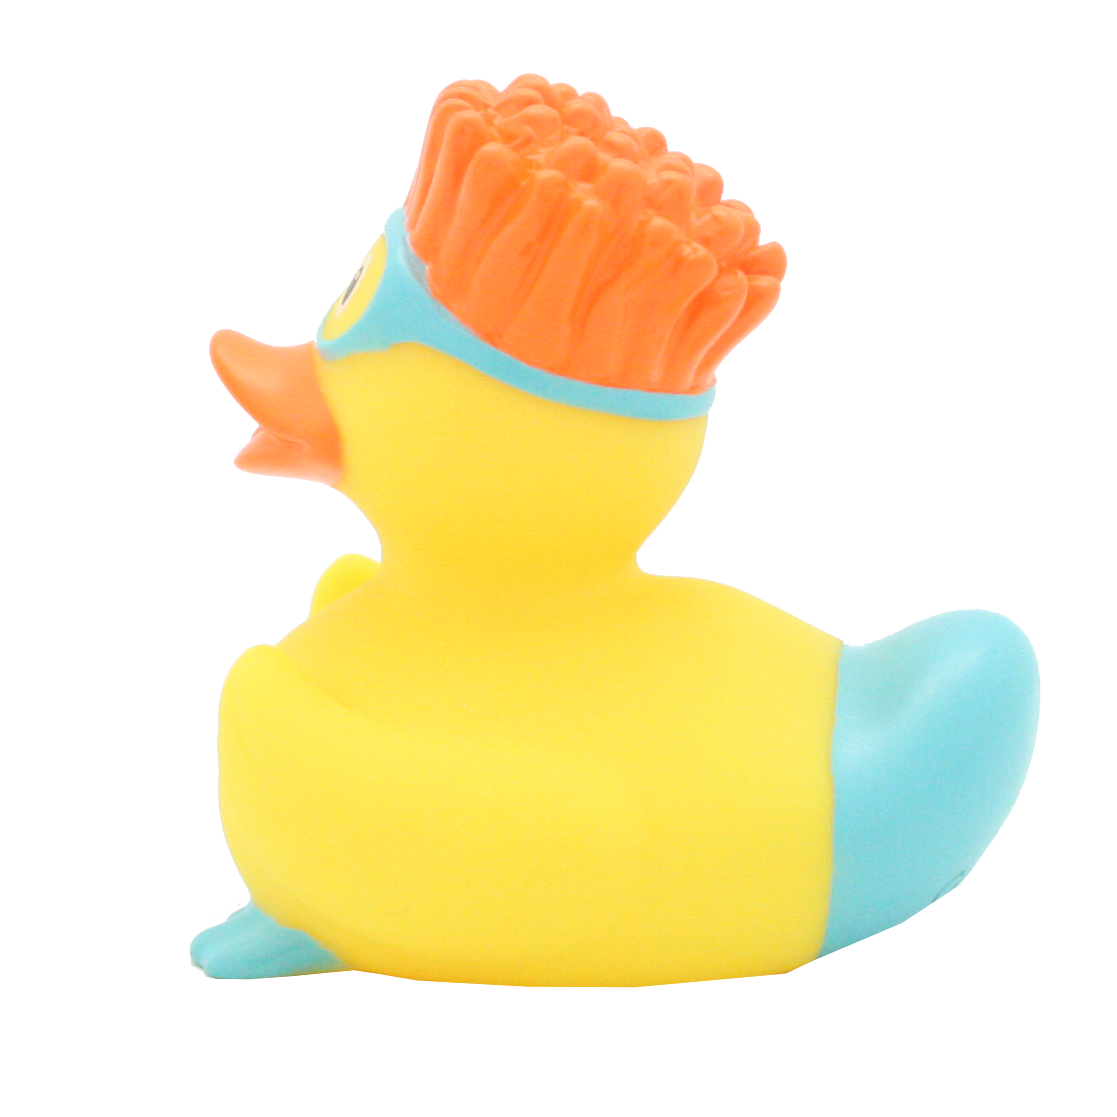 Snorkeling duck